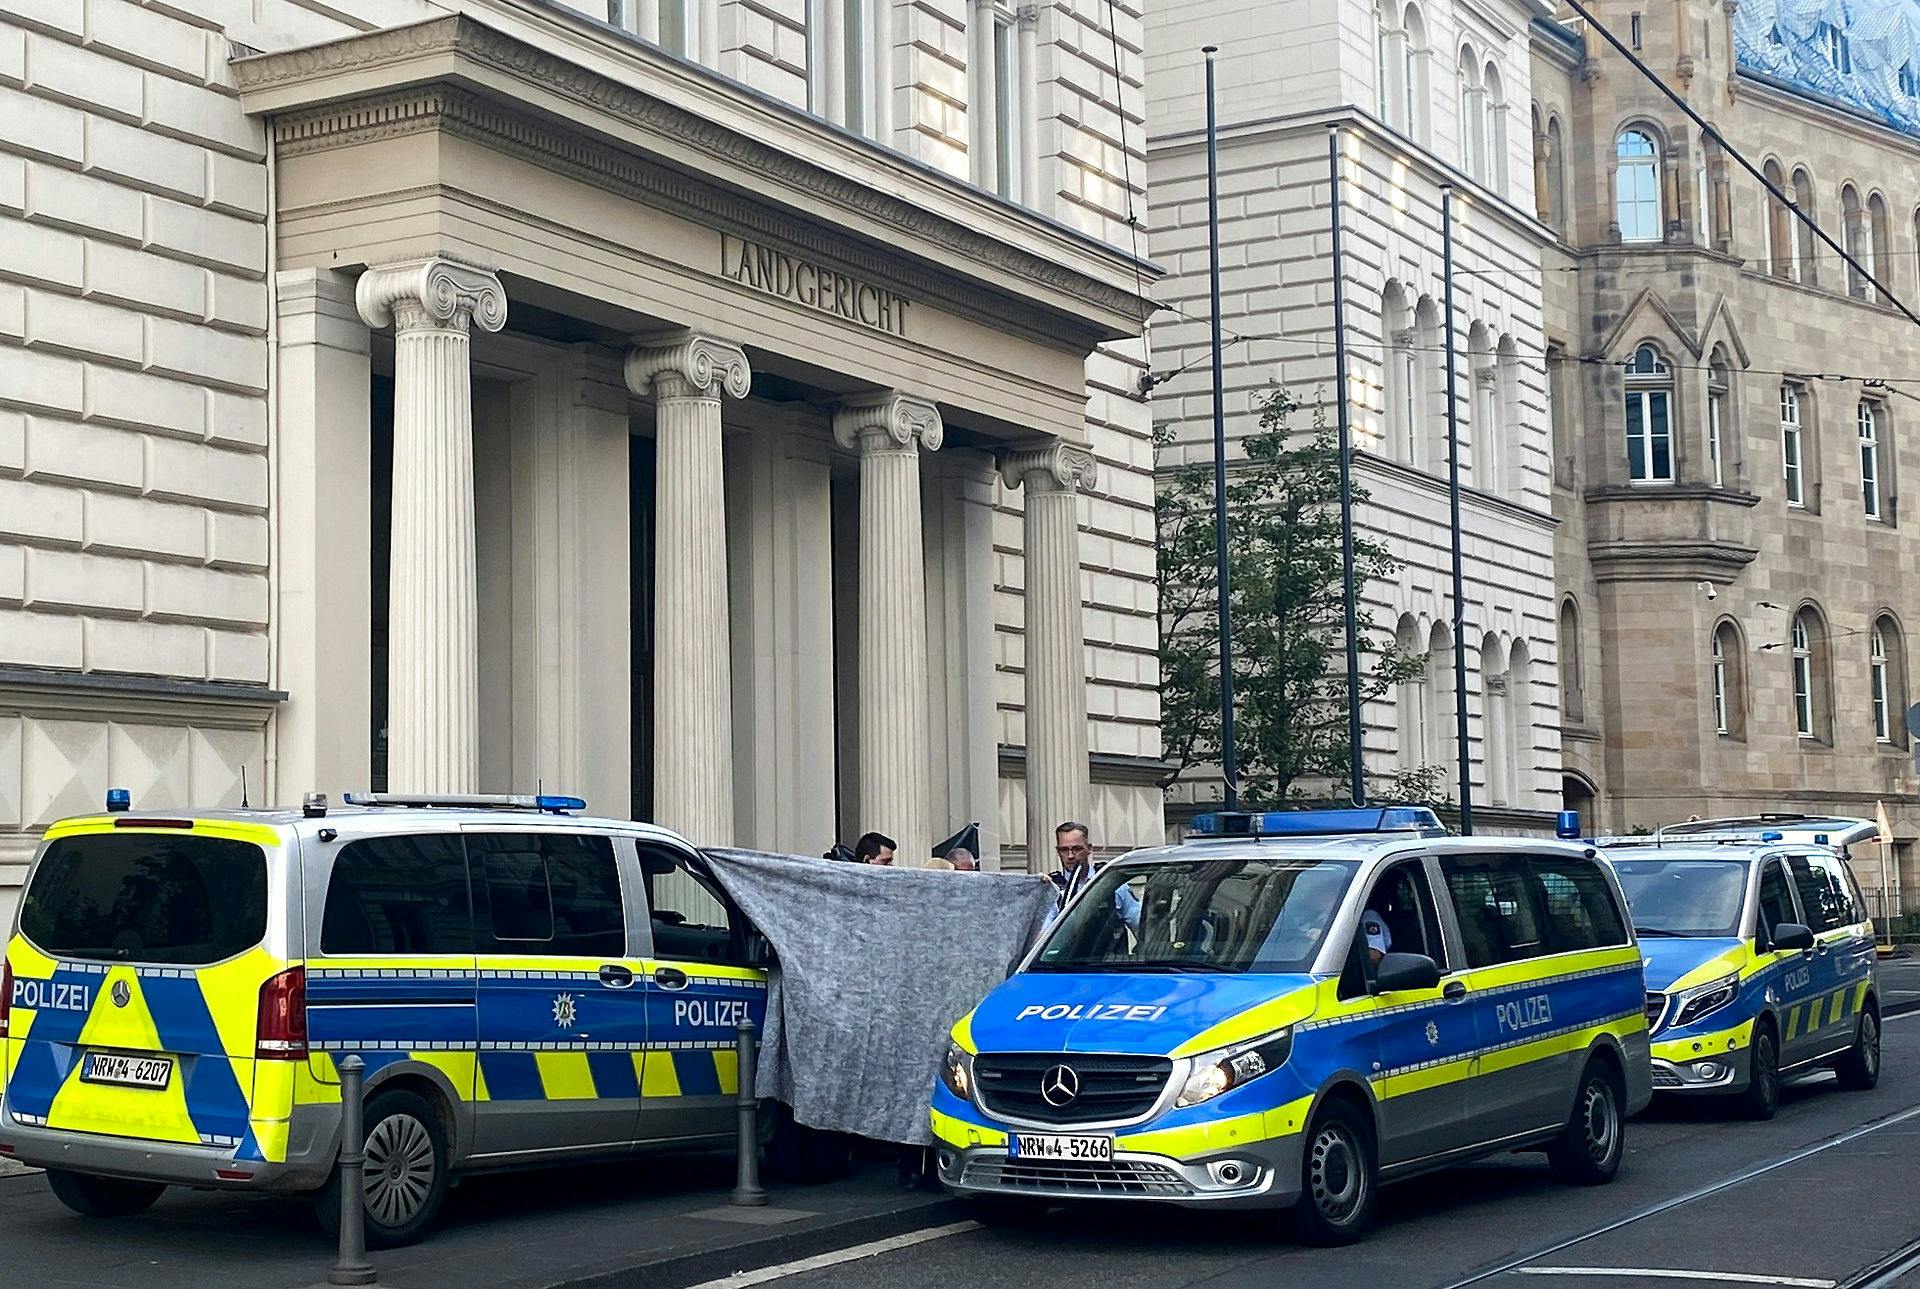 Det afskårne hoved blev fundet ude foran retsbygningen her i den tyske by Bonn. På fotoet er politiet igang med at sikre gerningsstedet.